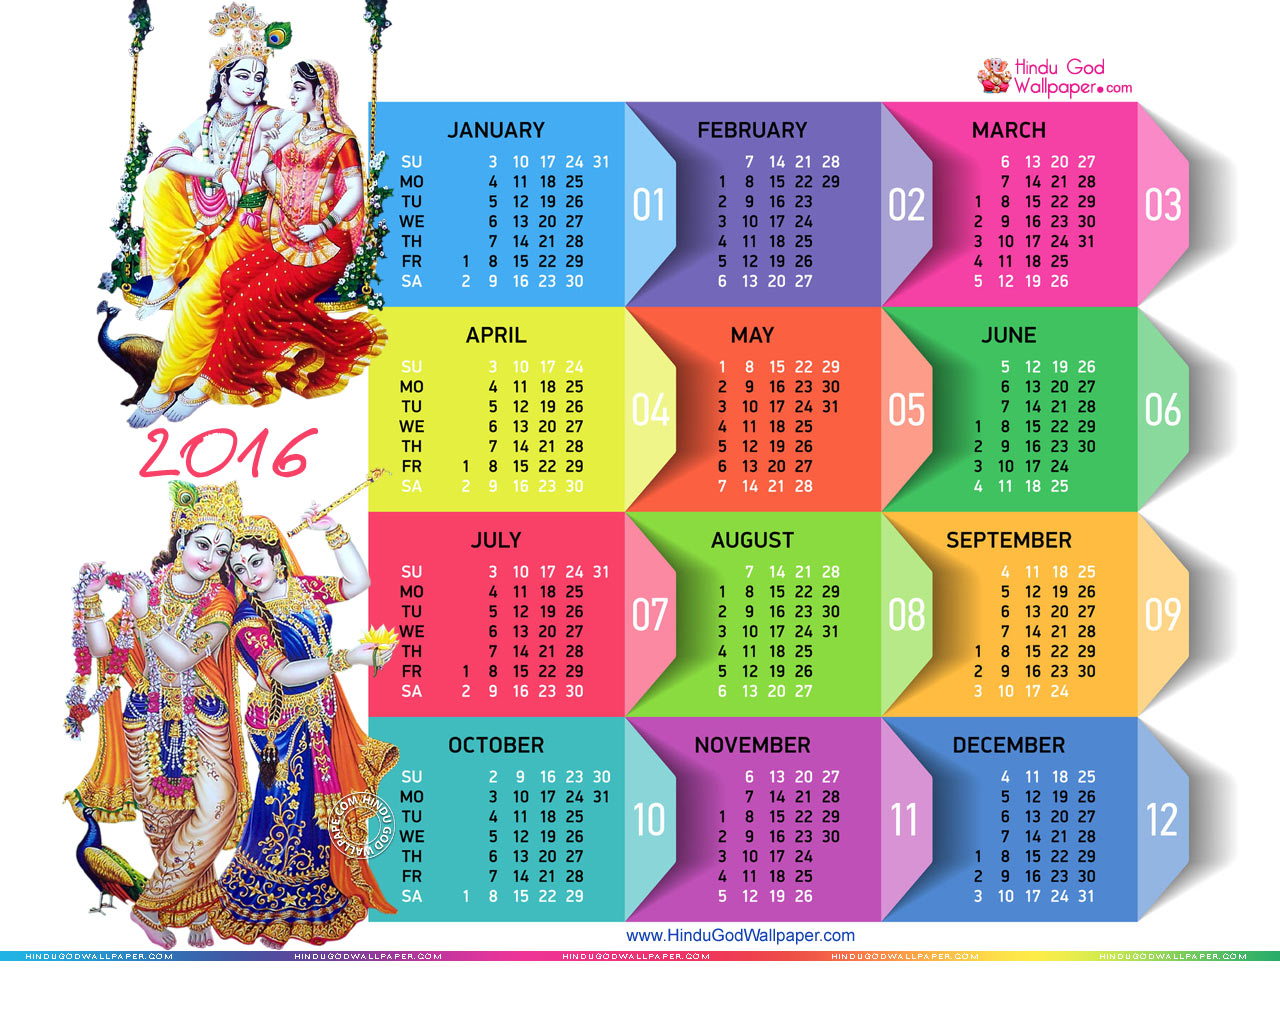 2016 Wallpaper Calendar   Free Desktop Calendar 2016